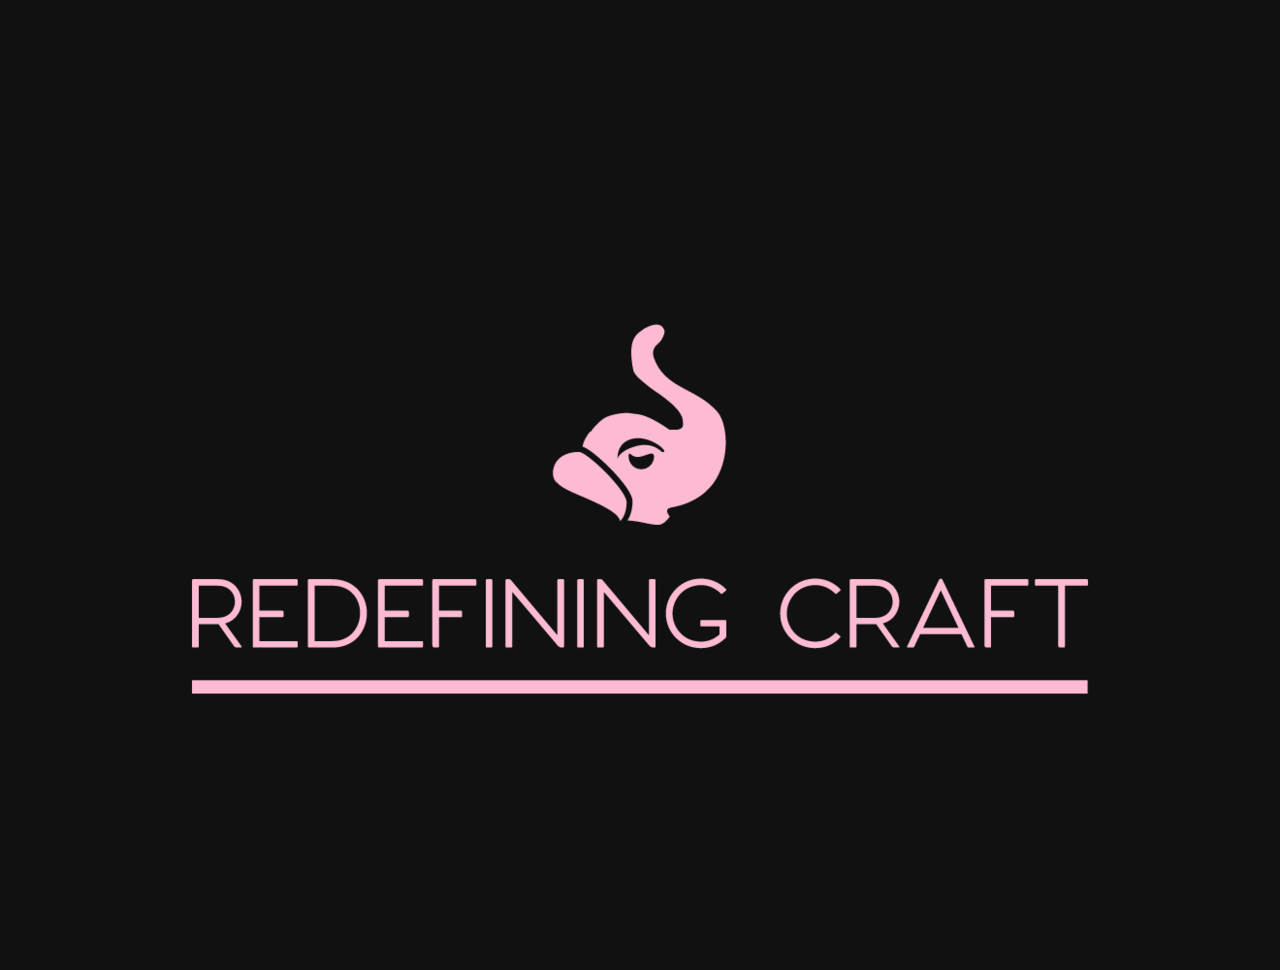 Redefining Craft with Dennis Stevens